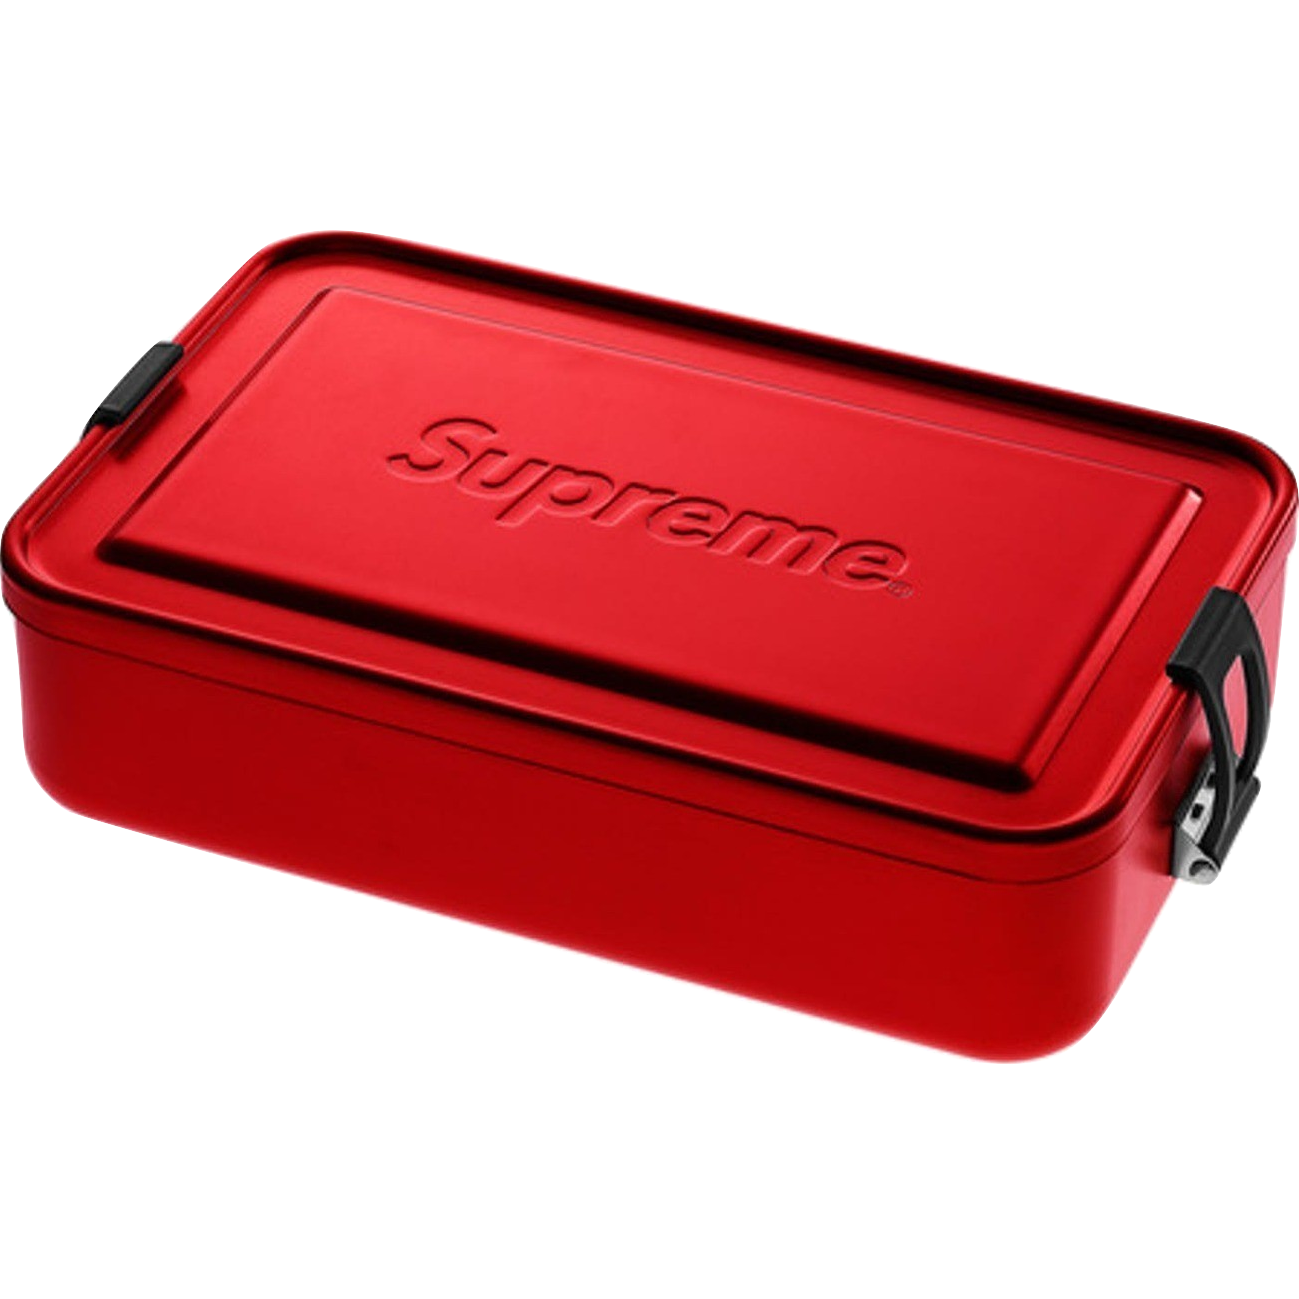 Supreme SIGG Large Metal Box Plus - Red - Used